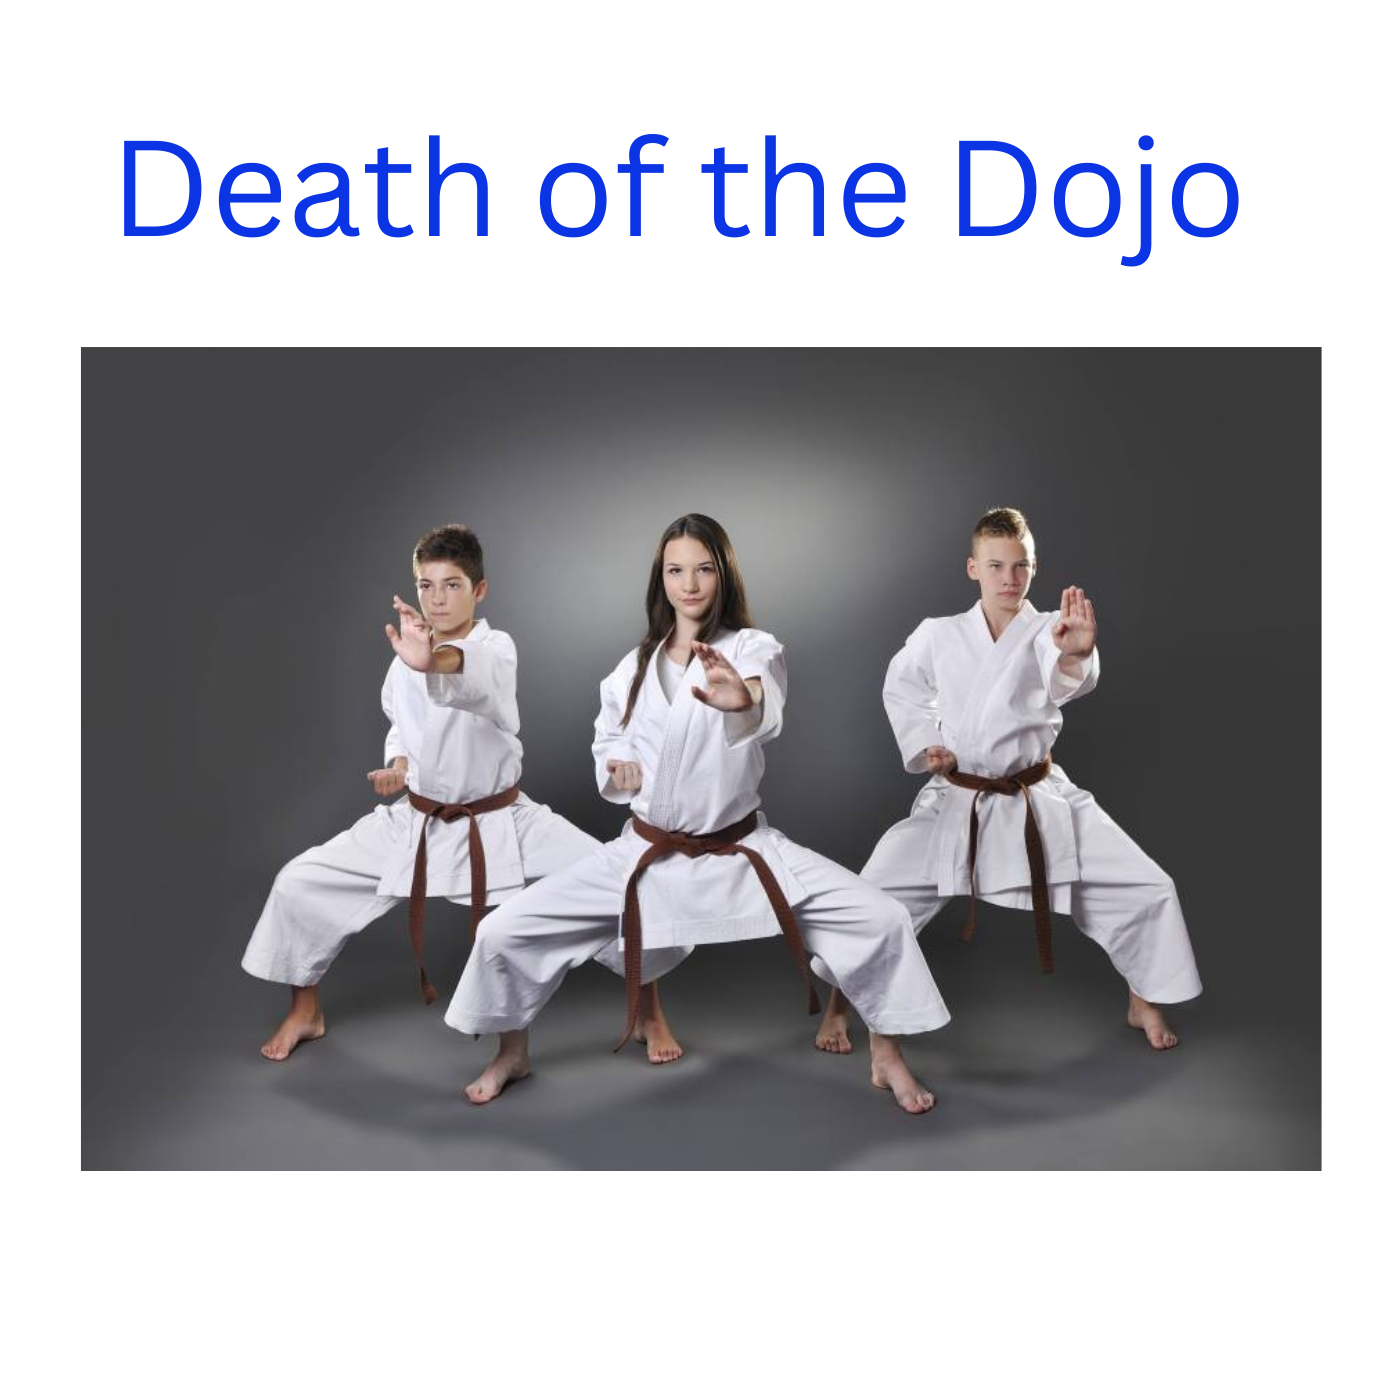 * Death of the Dojo